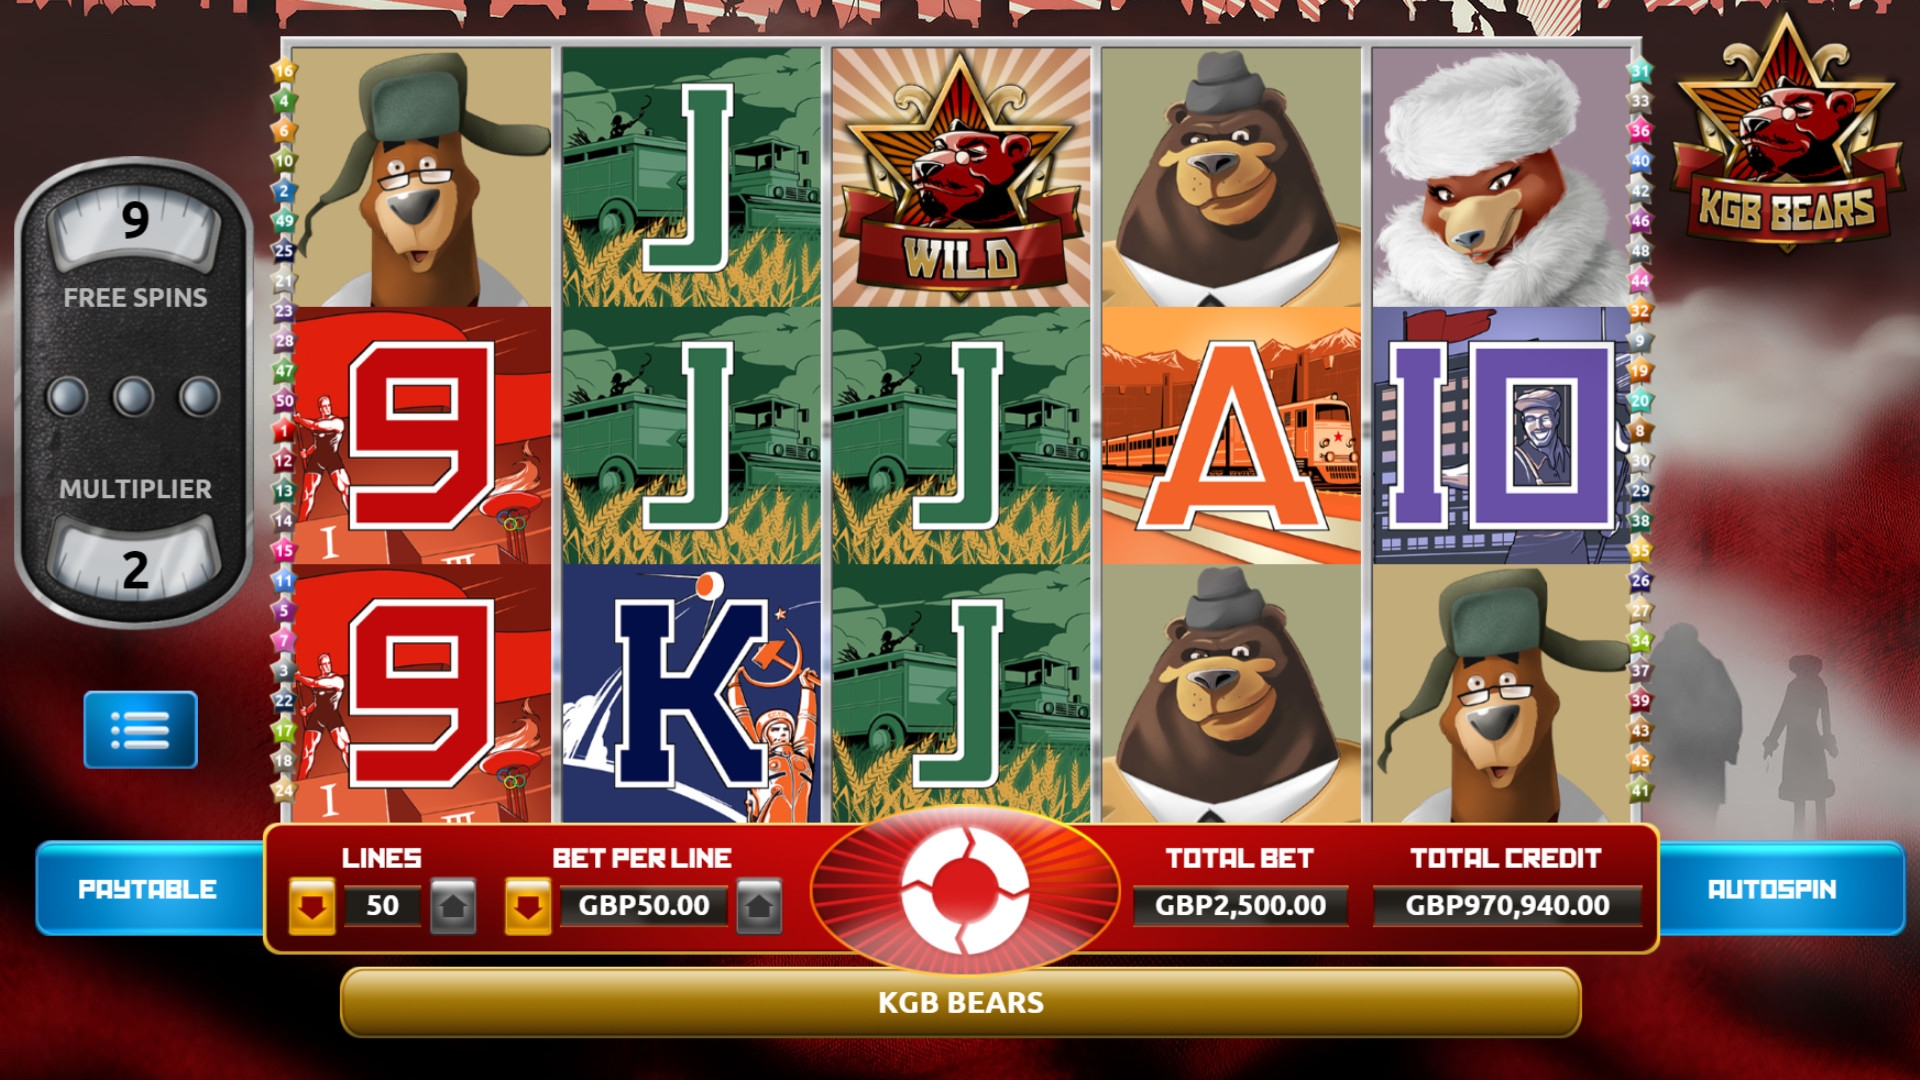 KGB Bears (KGB Bears) from category Slots